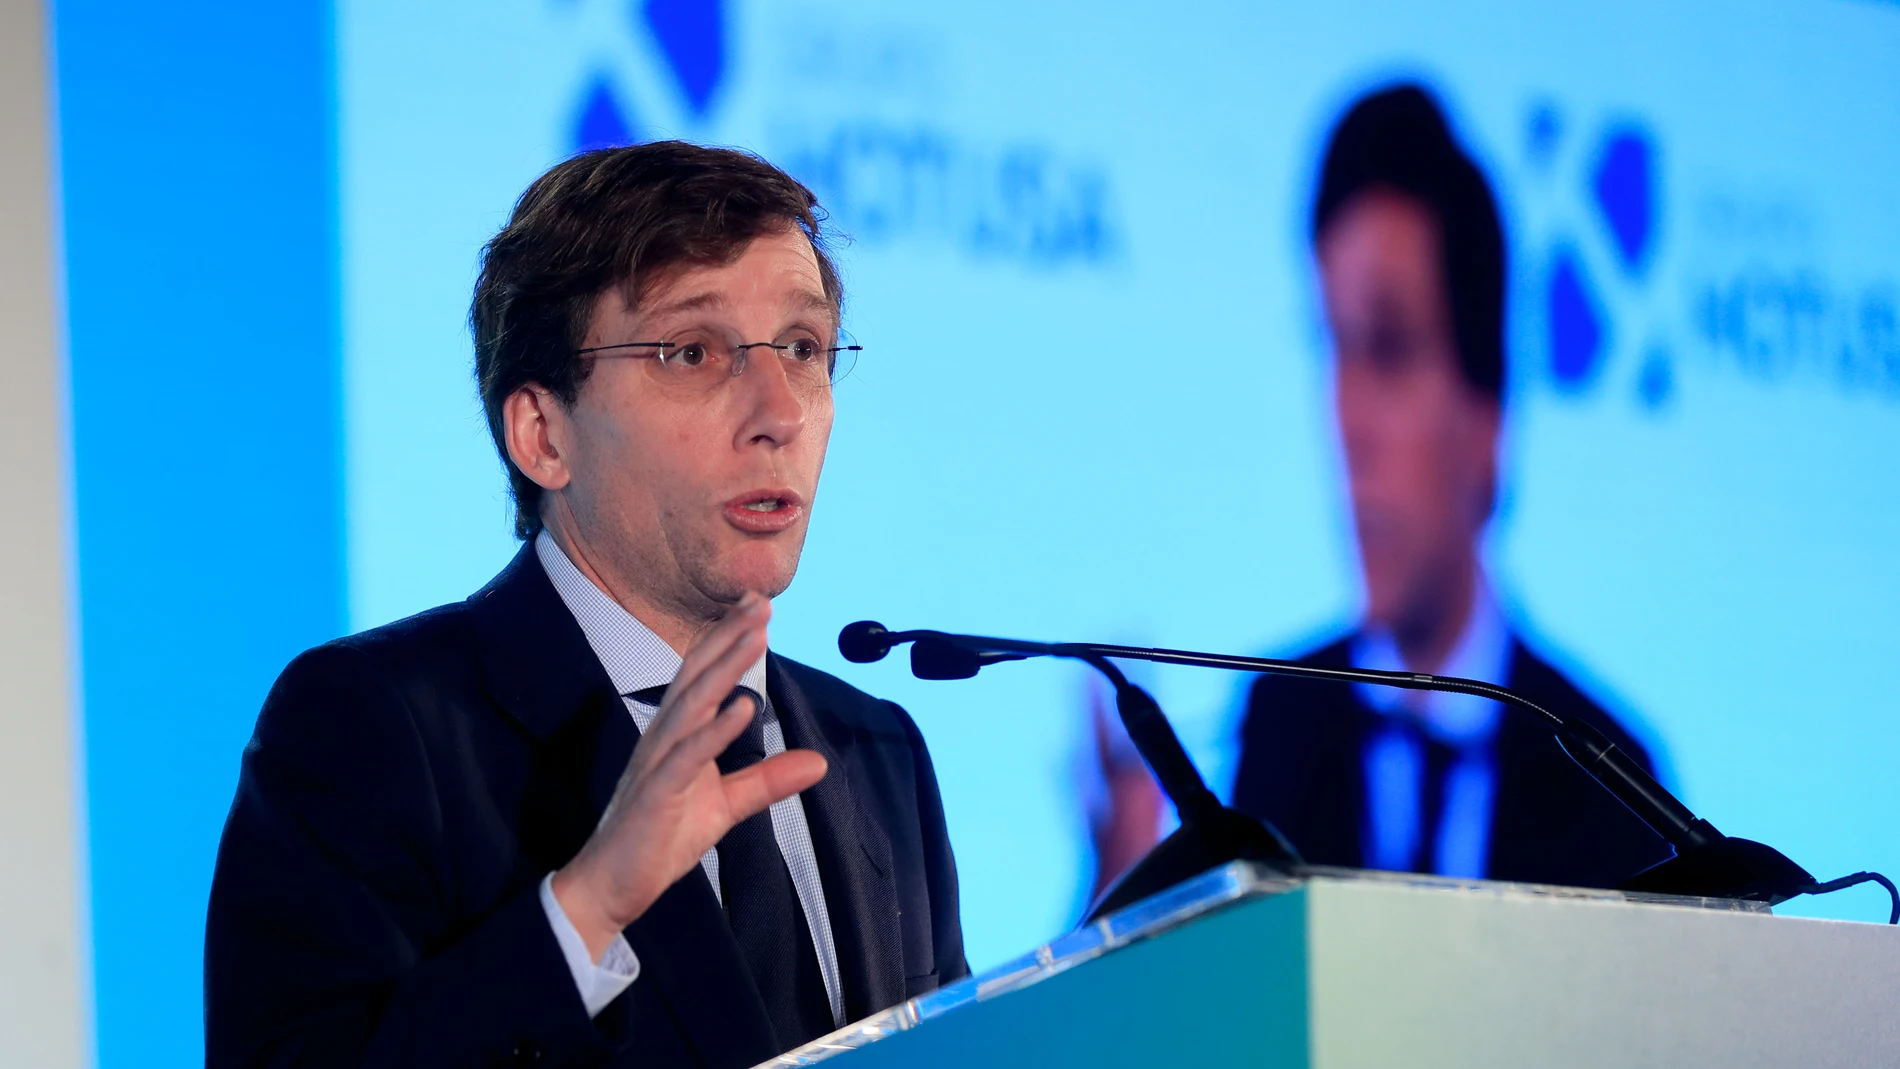 El alcalde de la capital, José Luis Martínez-Almeida, interviene en la IX edición del Foro de Innovación Turística